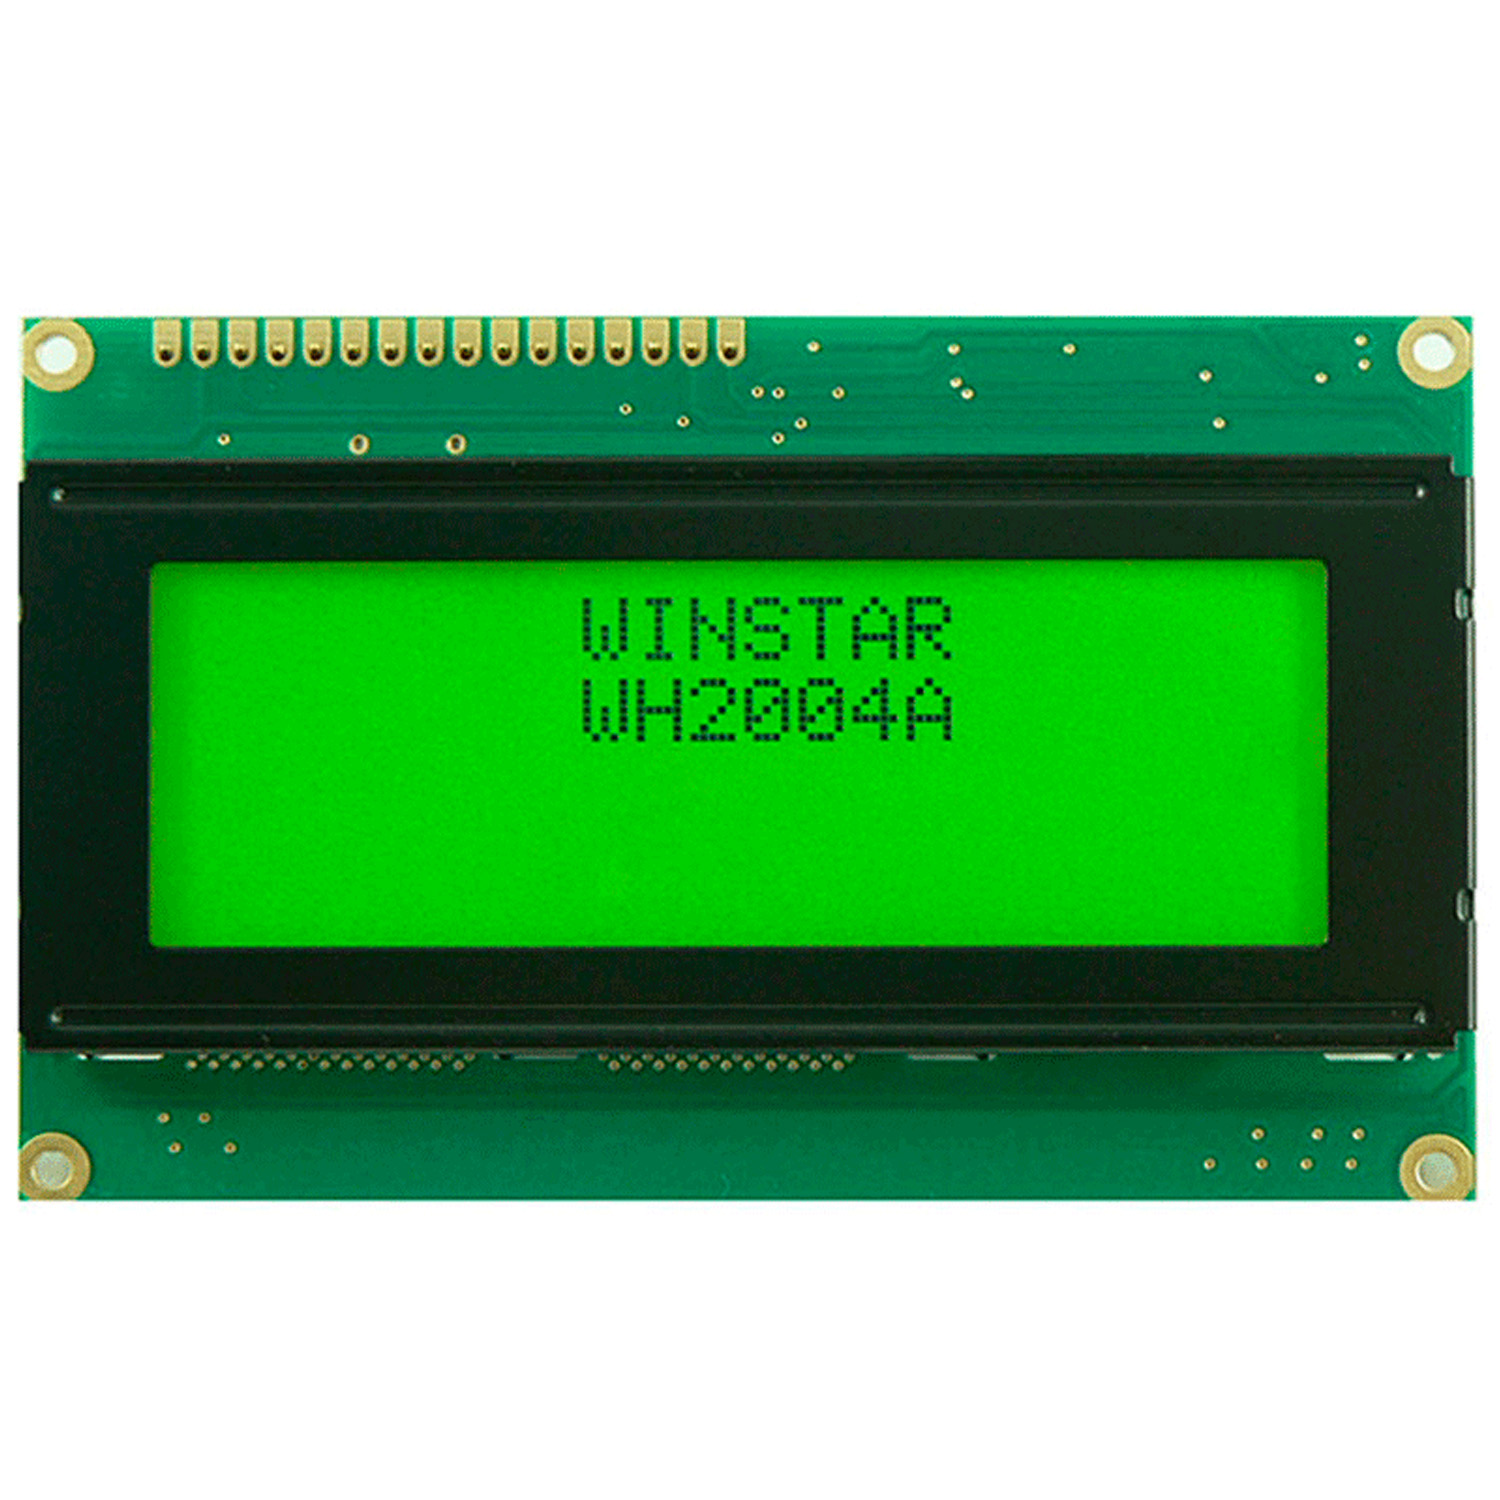 WINSTAR WH2004A символьный дисплей 20x4 (зеленый), фото